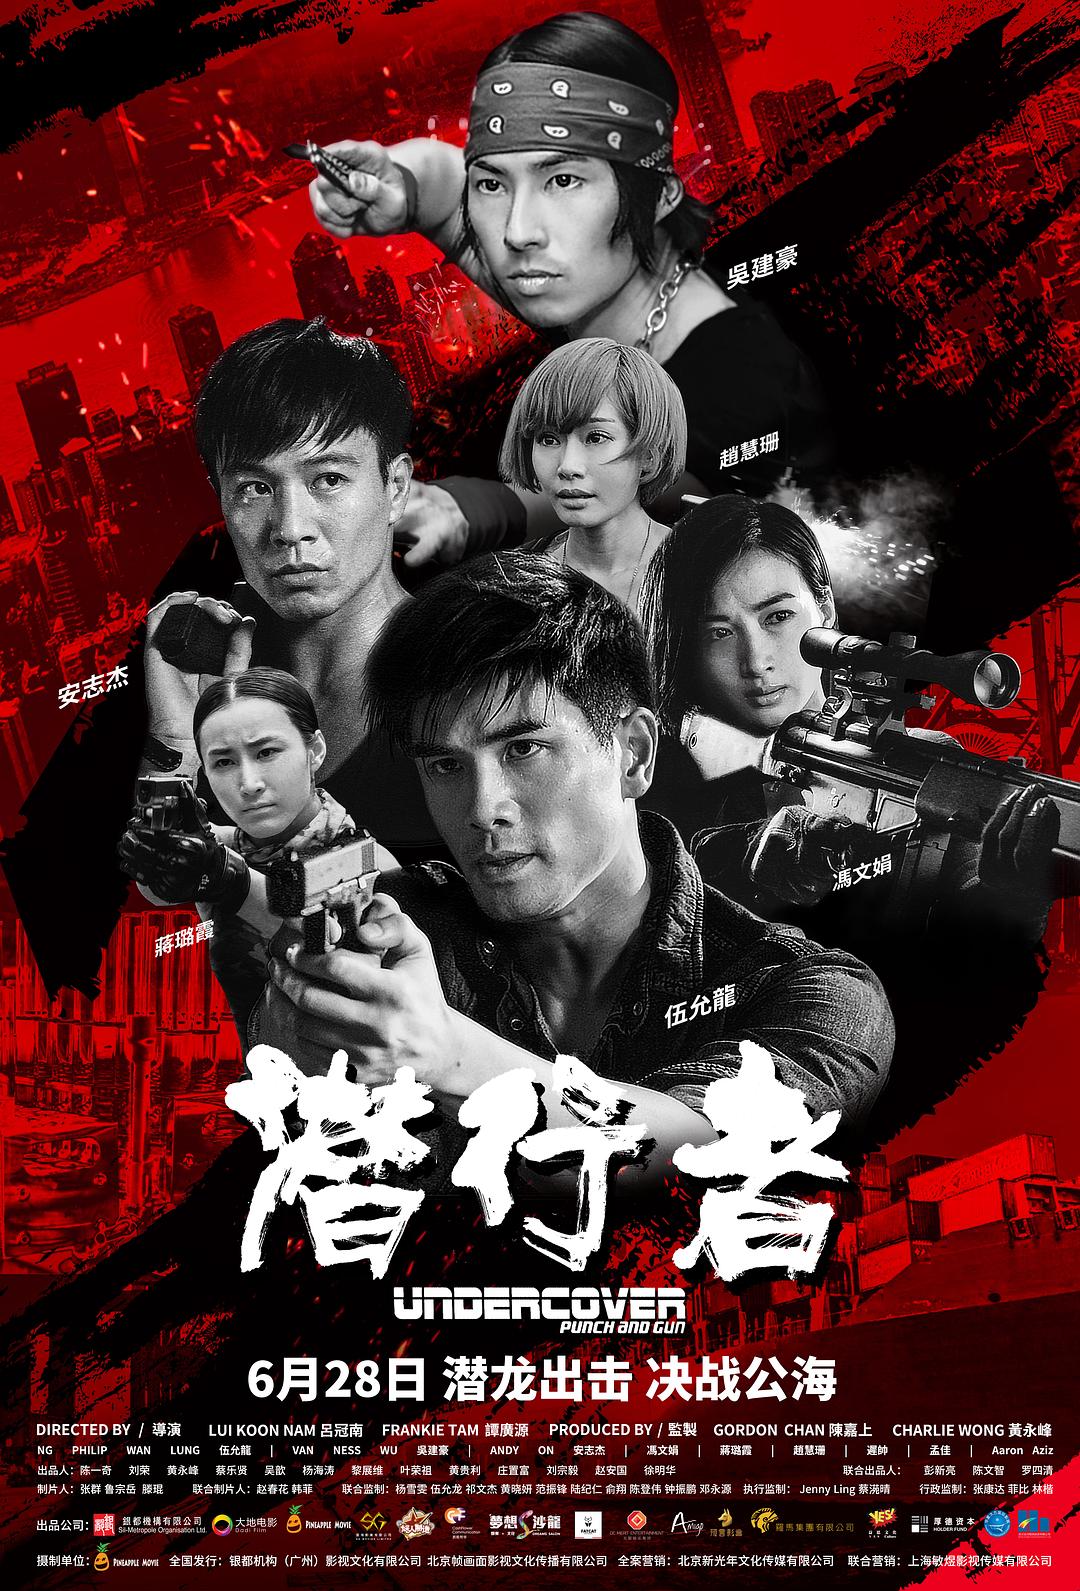 潜行者 Undercover.Punch.and.Gun.2019.CHINESE.1080p.BluRay.AVC.TrueHD.5.1-FGT 23.24GB-1.png